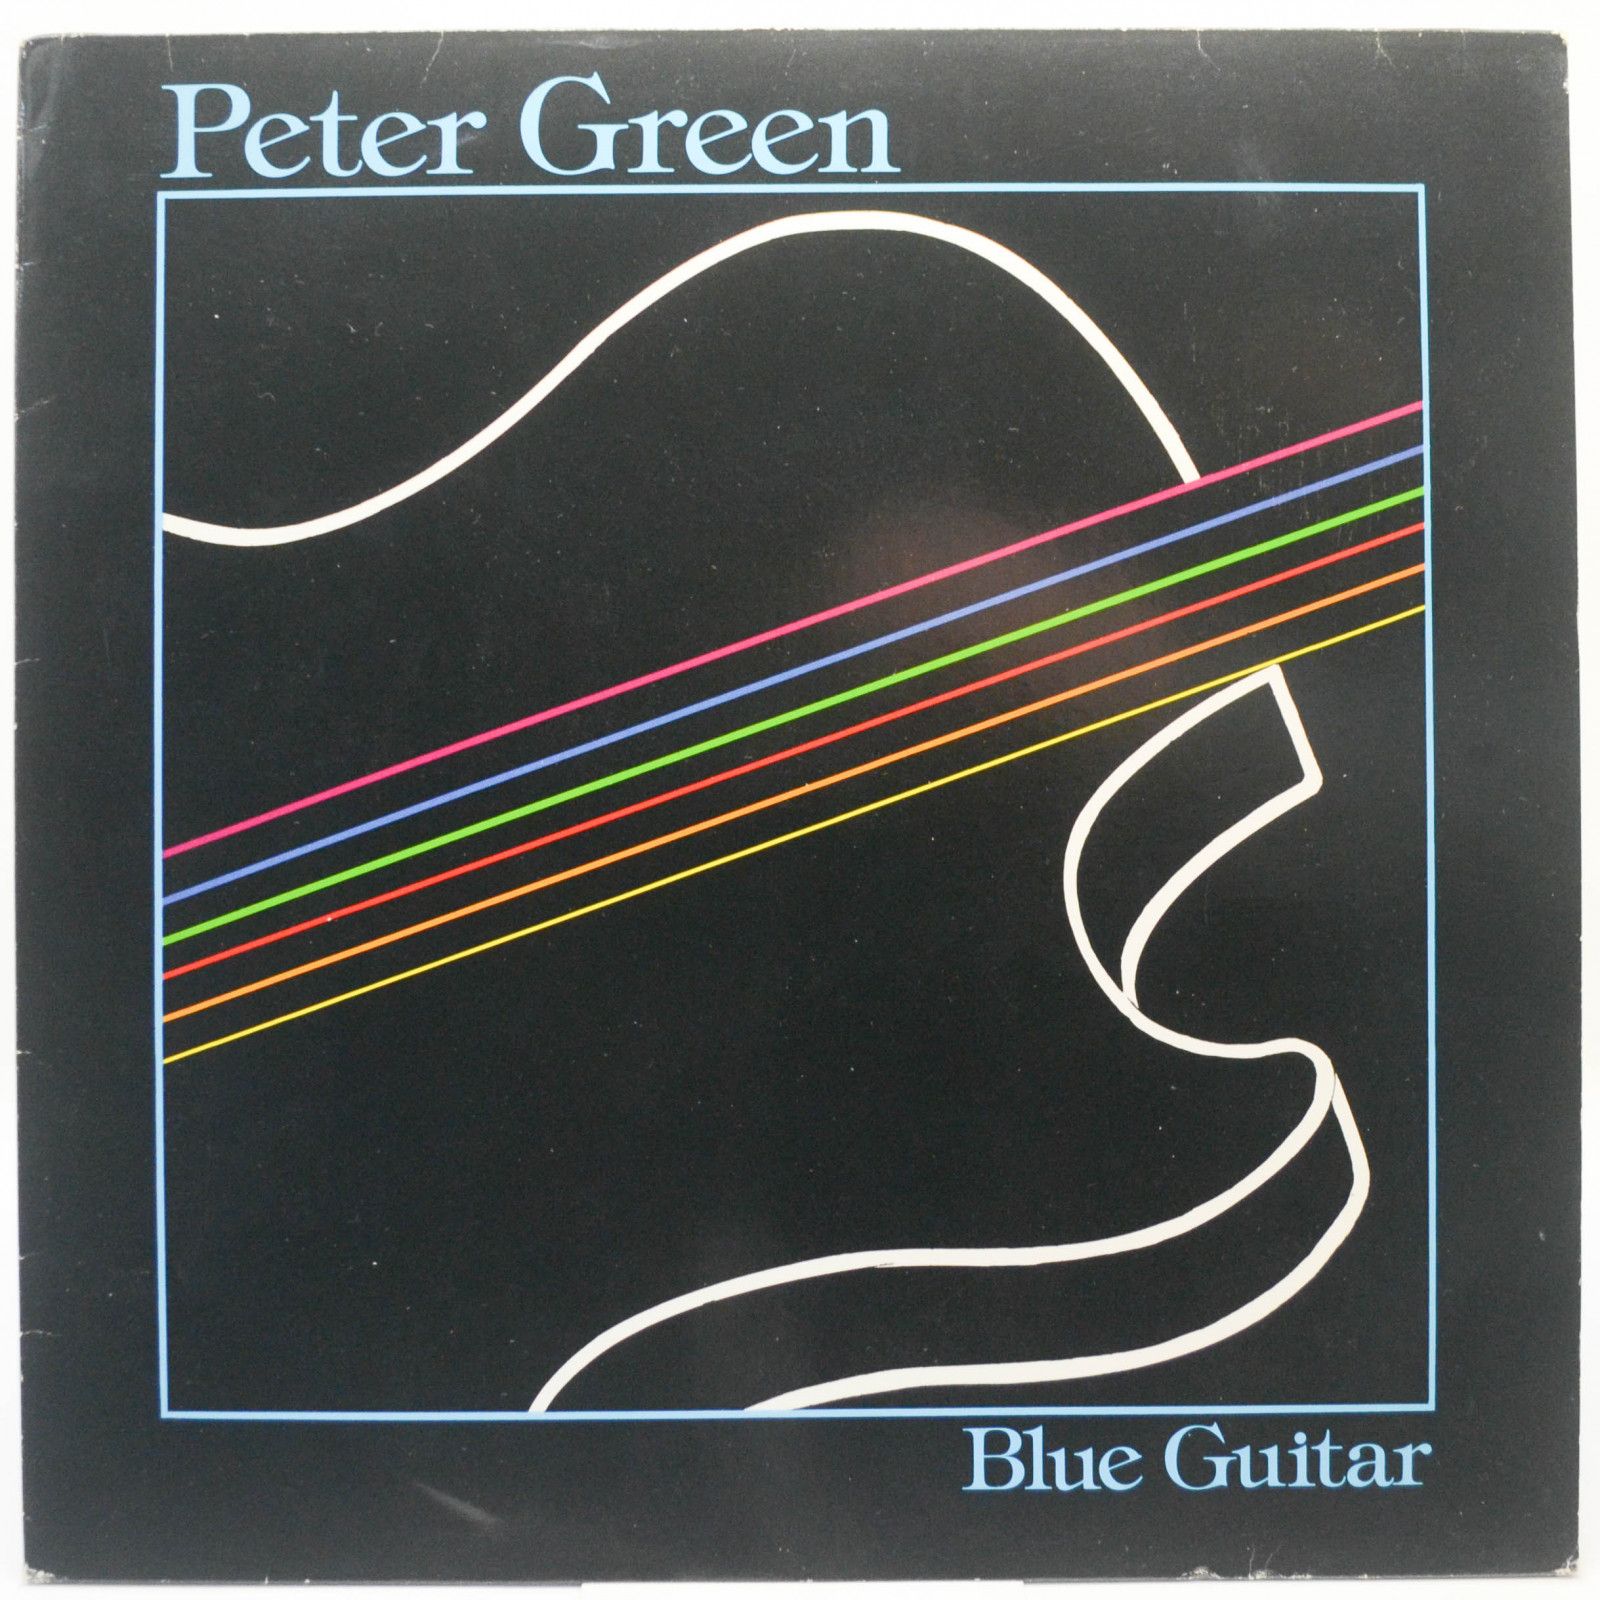 Peter Green — Blue Guitar, 1981